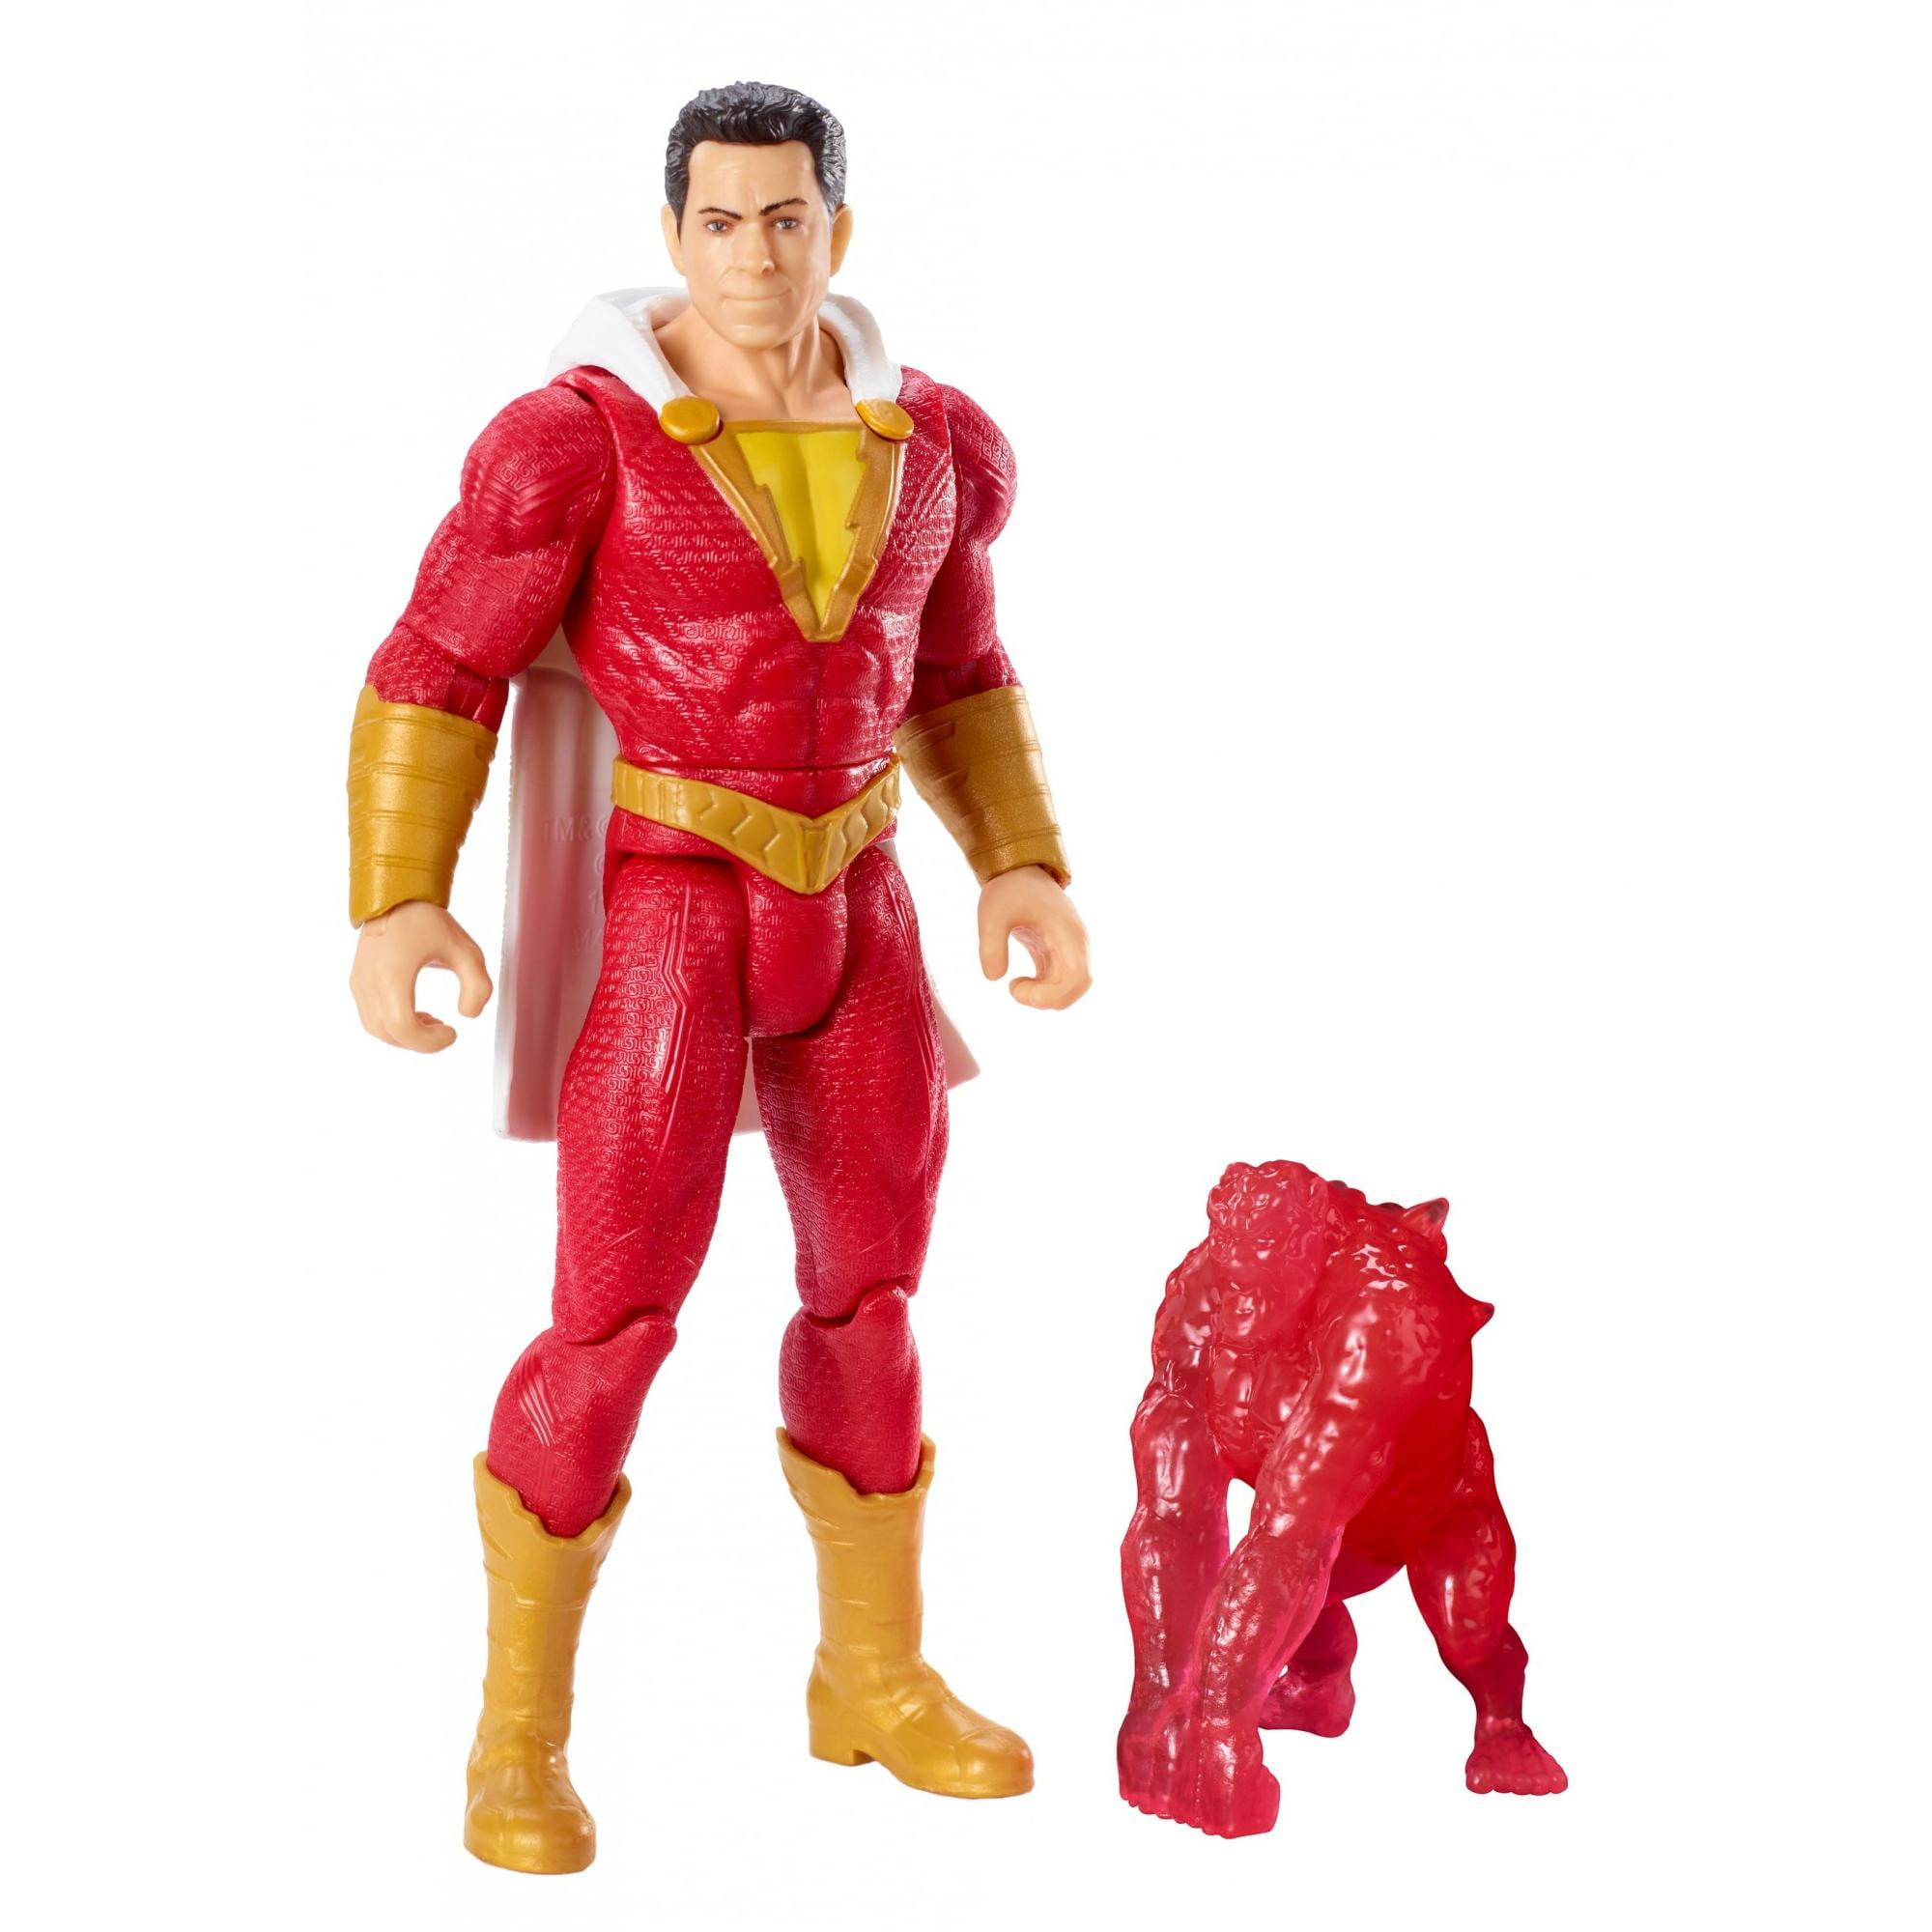 Mattel DC Comics Shazam Captain Marvel 6 Inch Action Figure for sale online